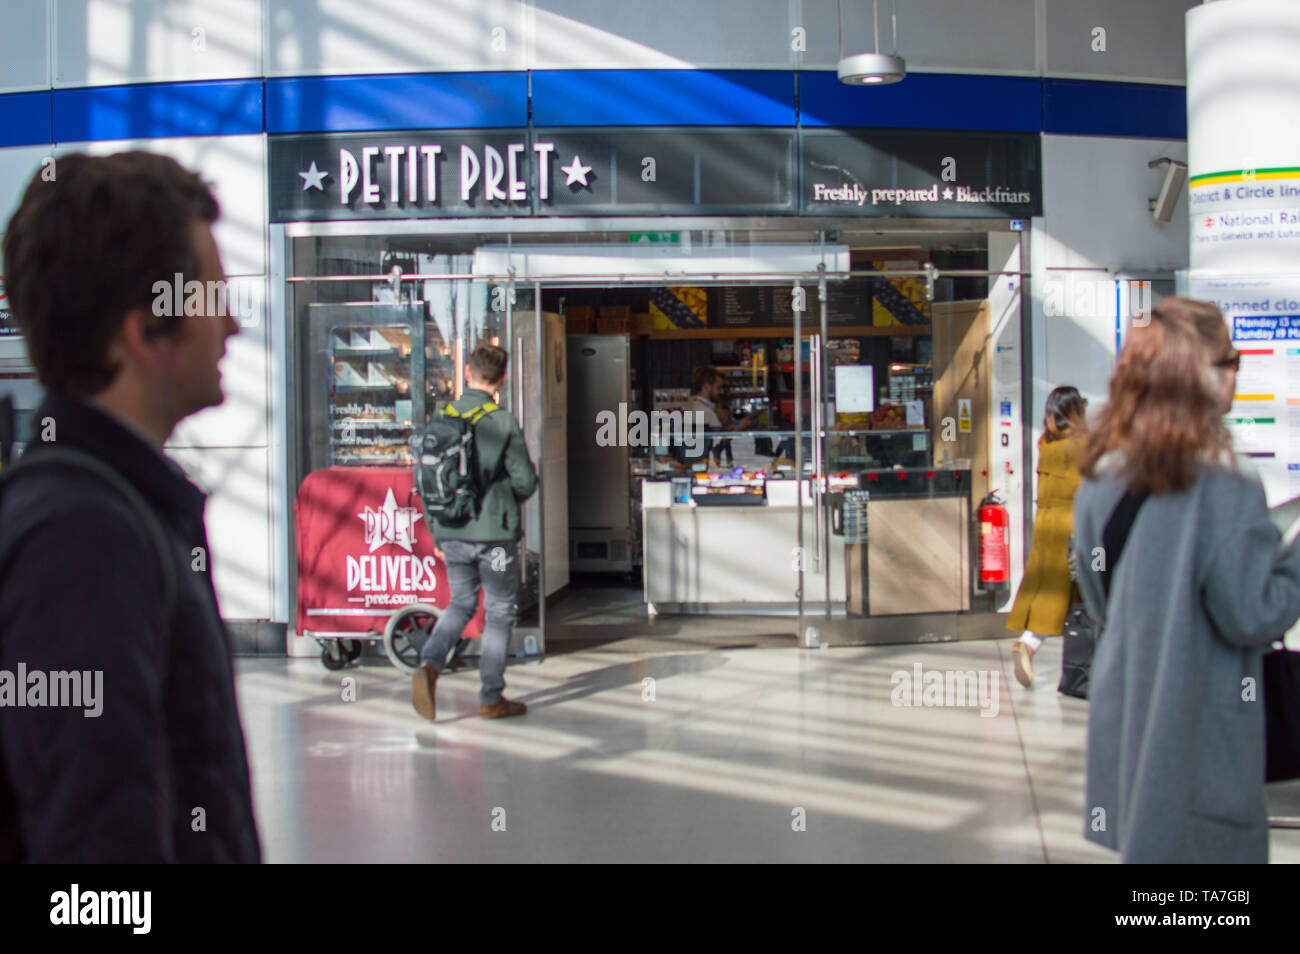 PETIT PRET die kleinere Größe Pret a Manger Niederlassung in London Blackfriars Station Stockfoto